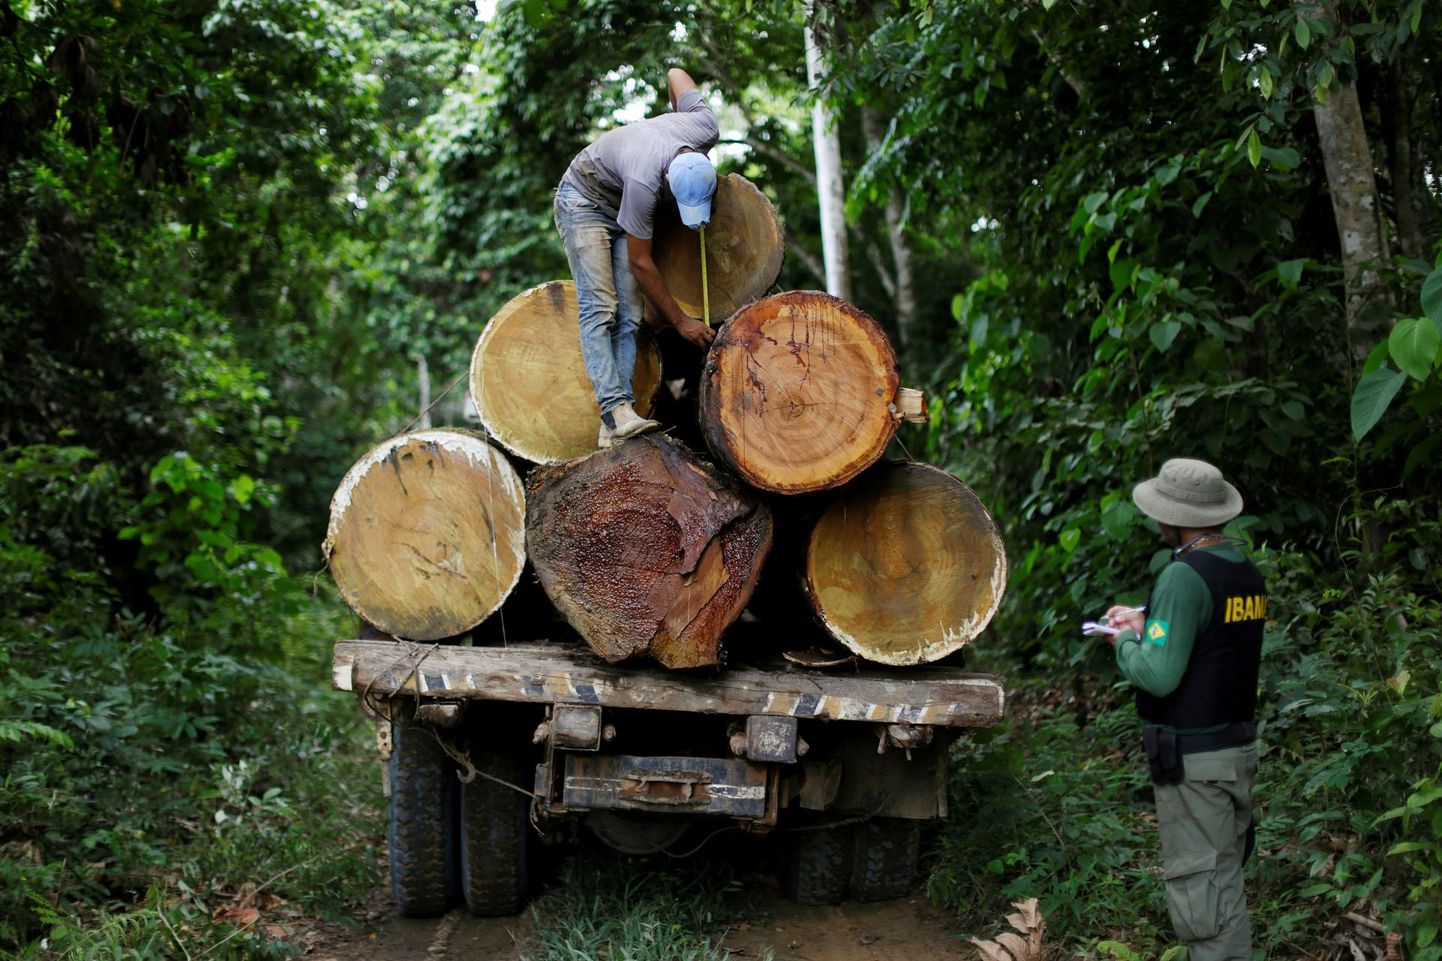 Brasiilia keskkonna ja taastuvate loodusvarade instituudi ehk Ibama ametnikud mõõdavad puutüvesid ebaseadusliku raadamise vastasel operatsioonil Novo Progressos Pará osariigis Brasiilia põhjaosas. Presidendikandidaat Jair Bolsonaro on lubanud Ibama õigusi kärpida või ameti koguni sulgeda, mis jätaks sulidele vihmametsas tegutsemiseks vabad käed.